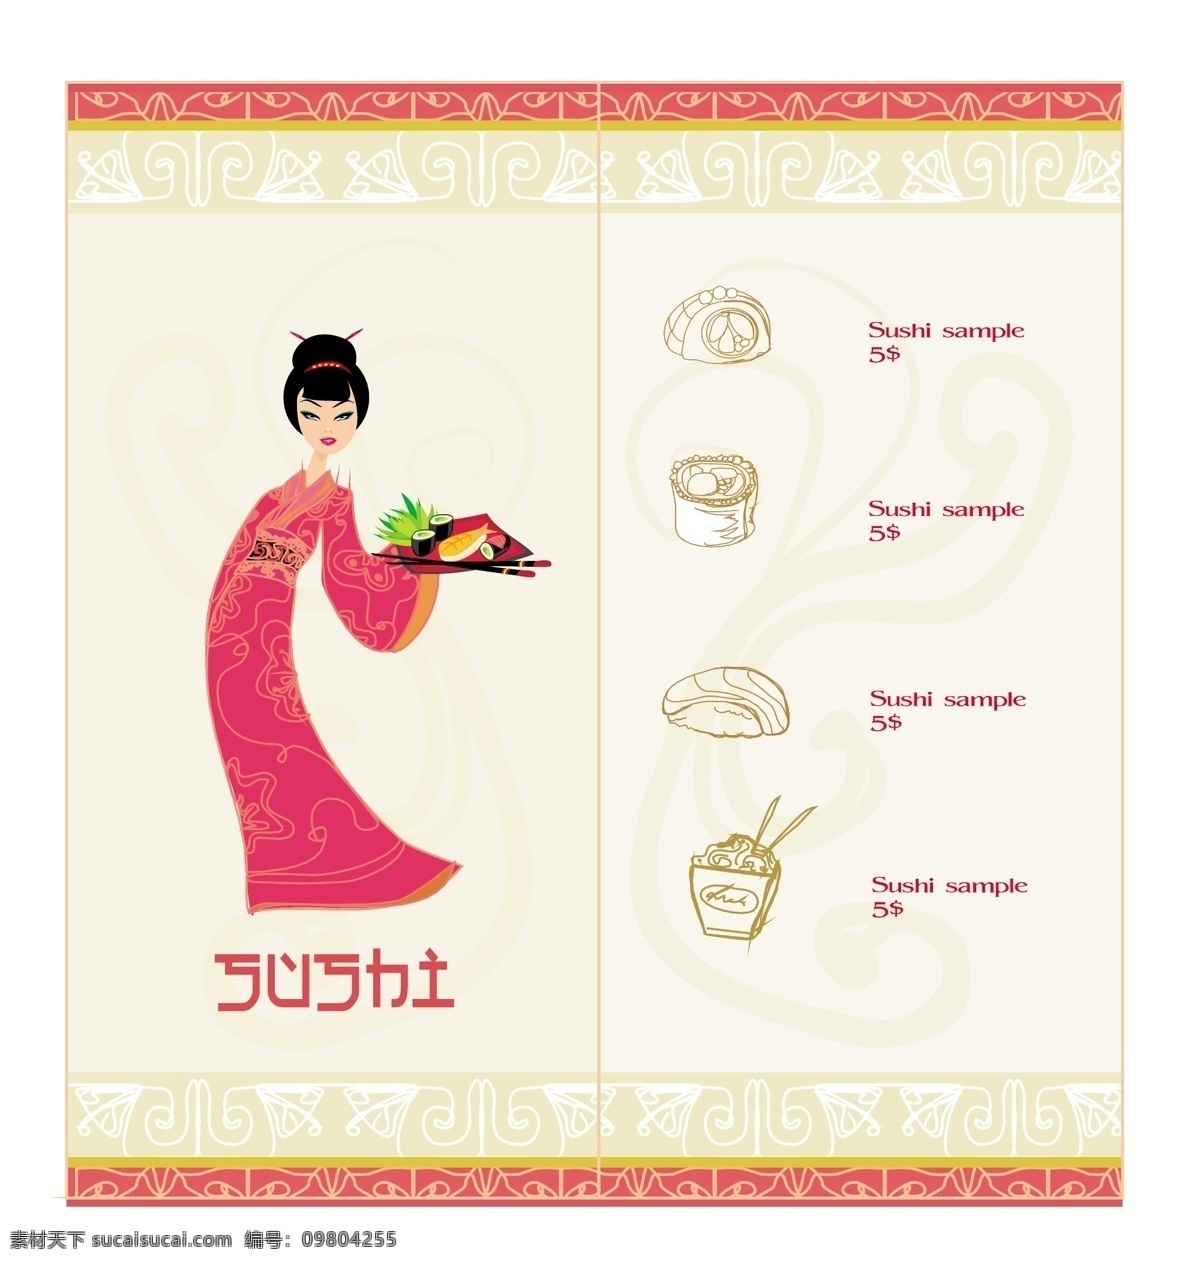 日本料理 菜单 淡雅 花纹 卡通画 卡通人物 料理 日本 日本风格 手绘 矢量图 其他矢量图